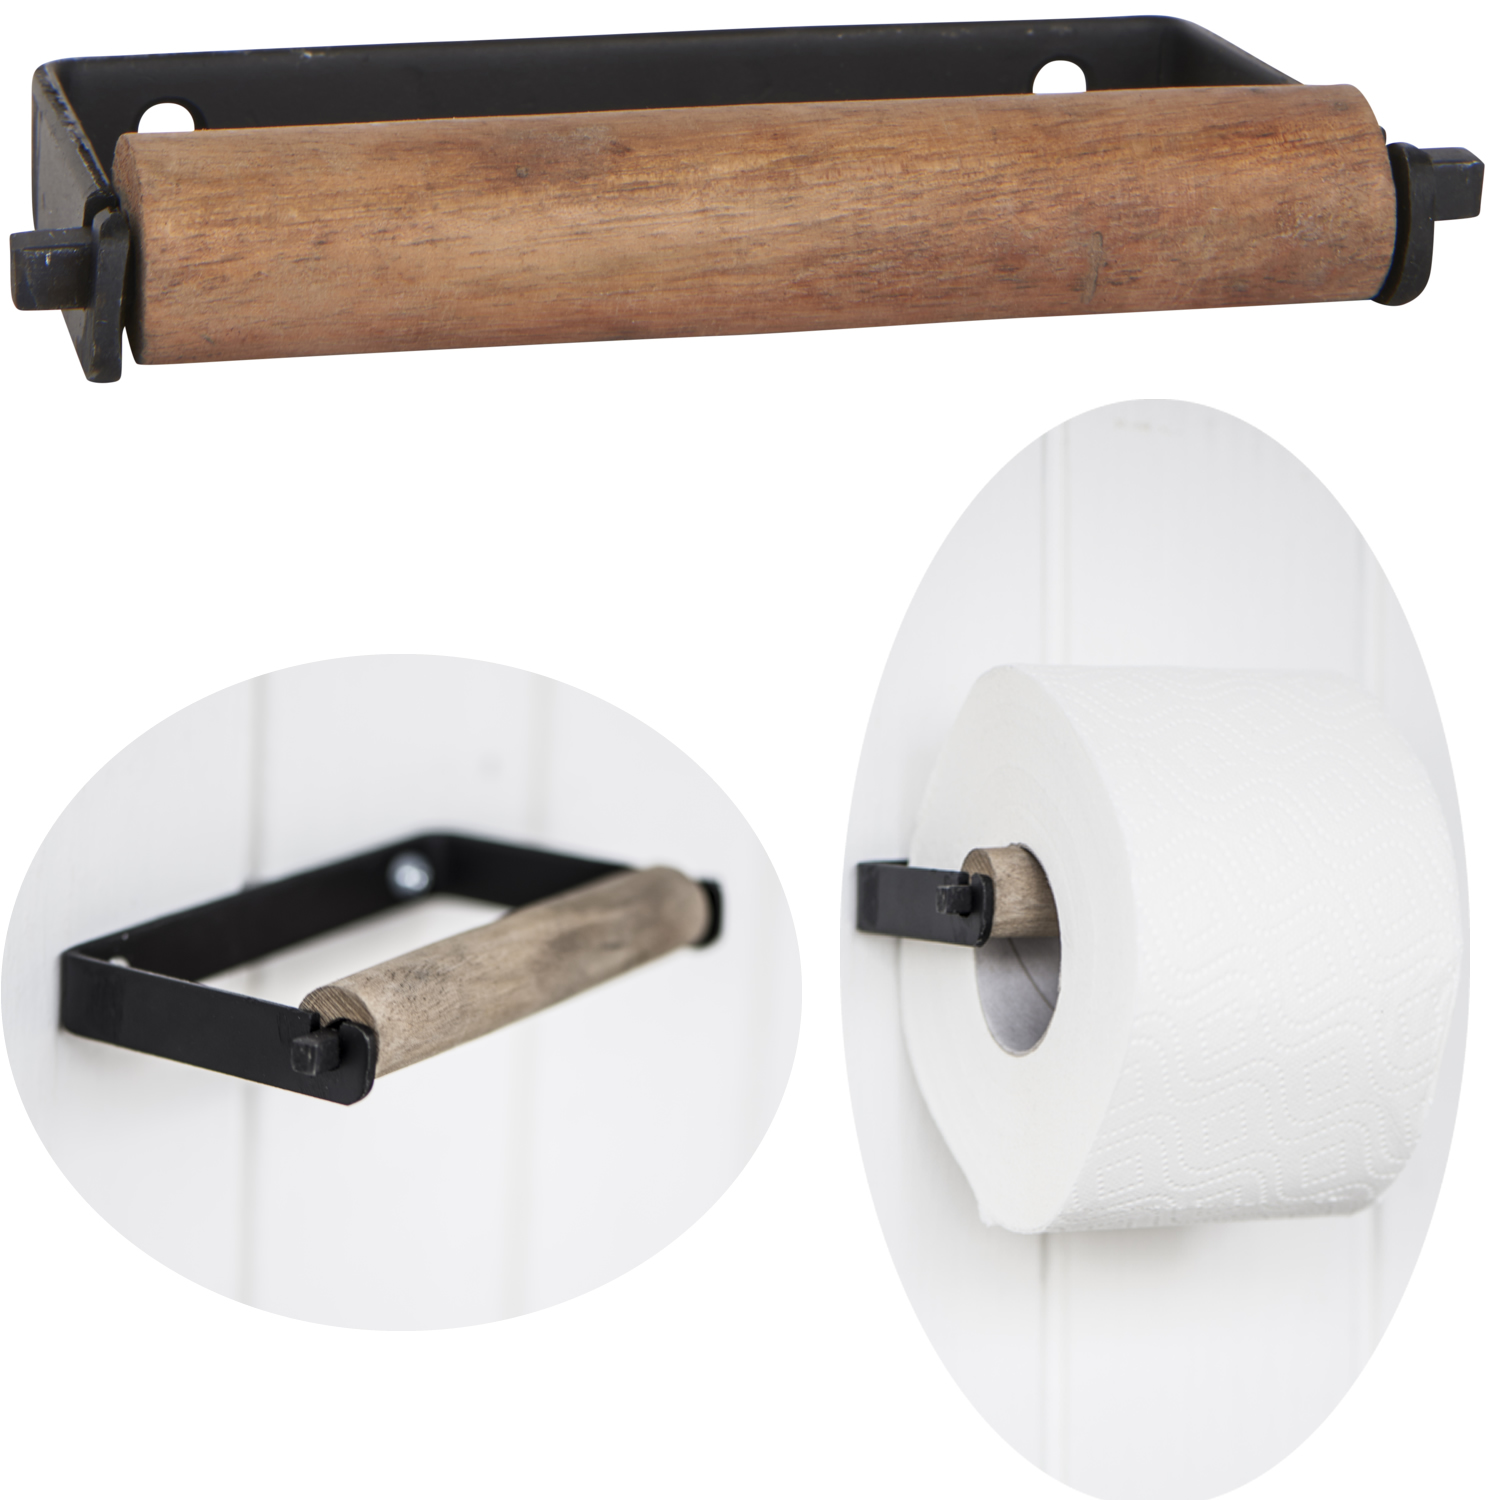 WC-Papierrollenständer Metall Rollenhalter Klopapierhalter Klopapierständer NEU 